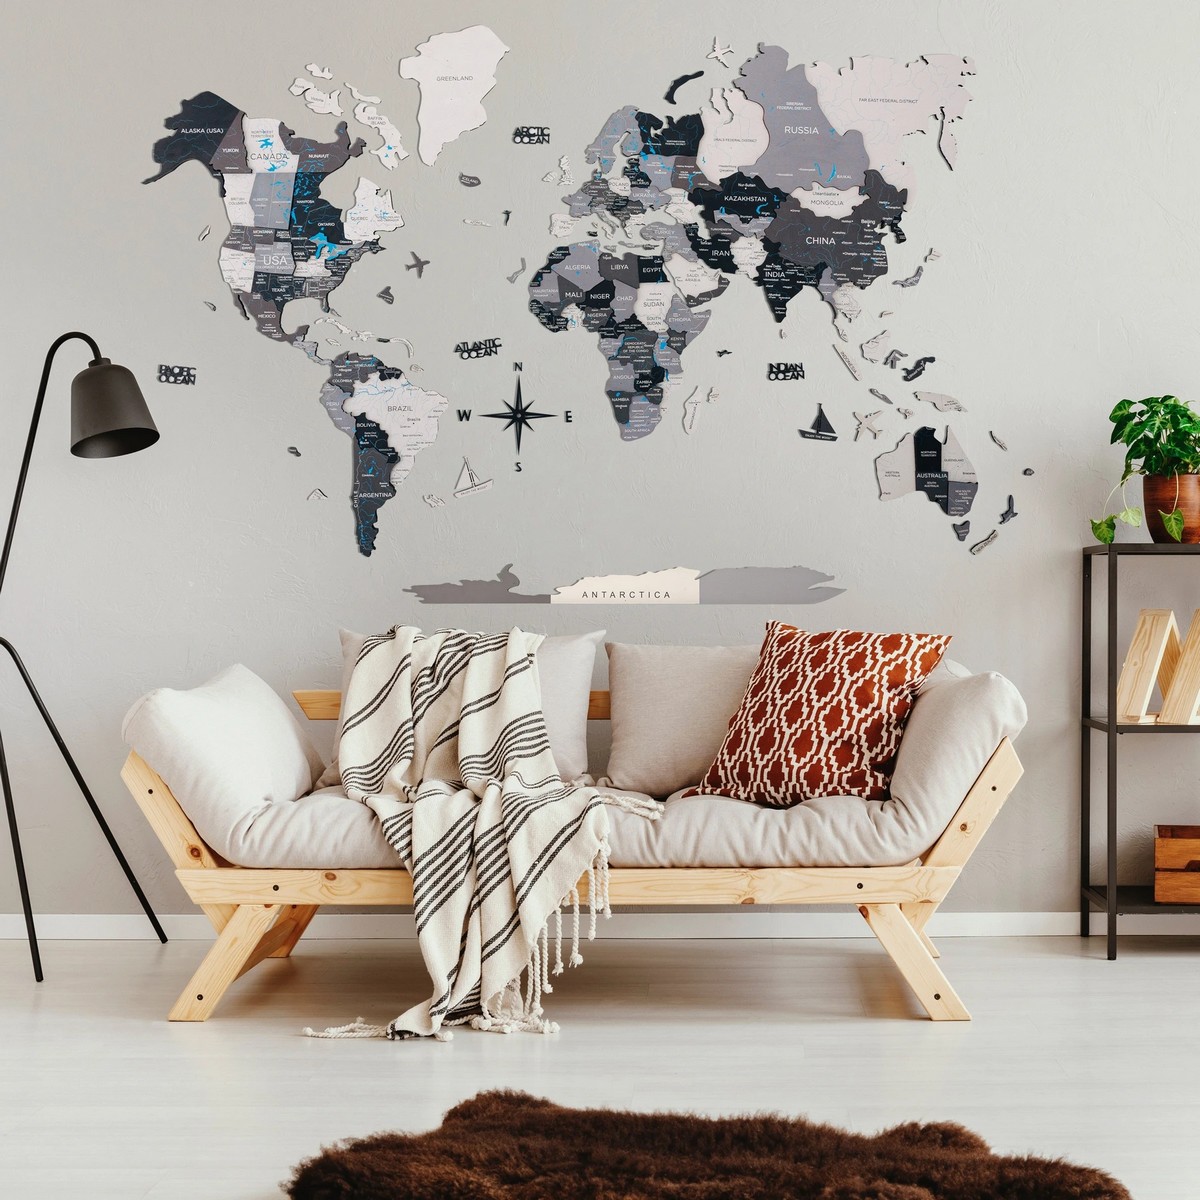 раскрашенная вручную 3D карта мира на стене